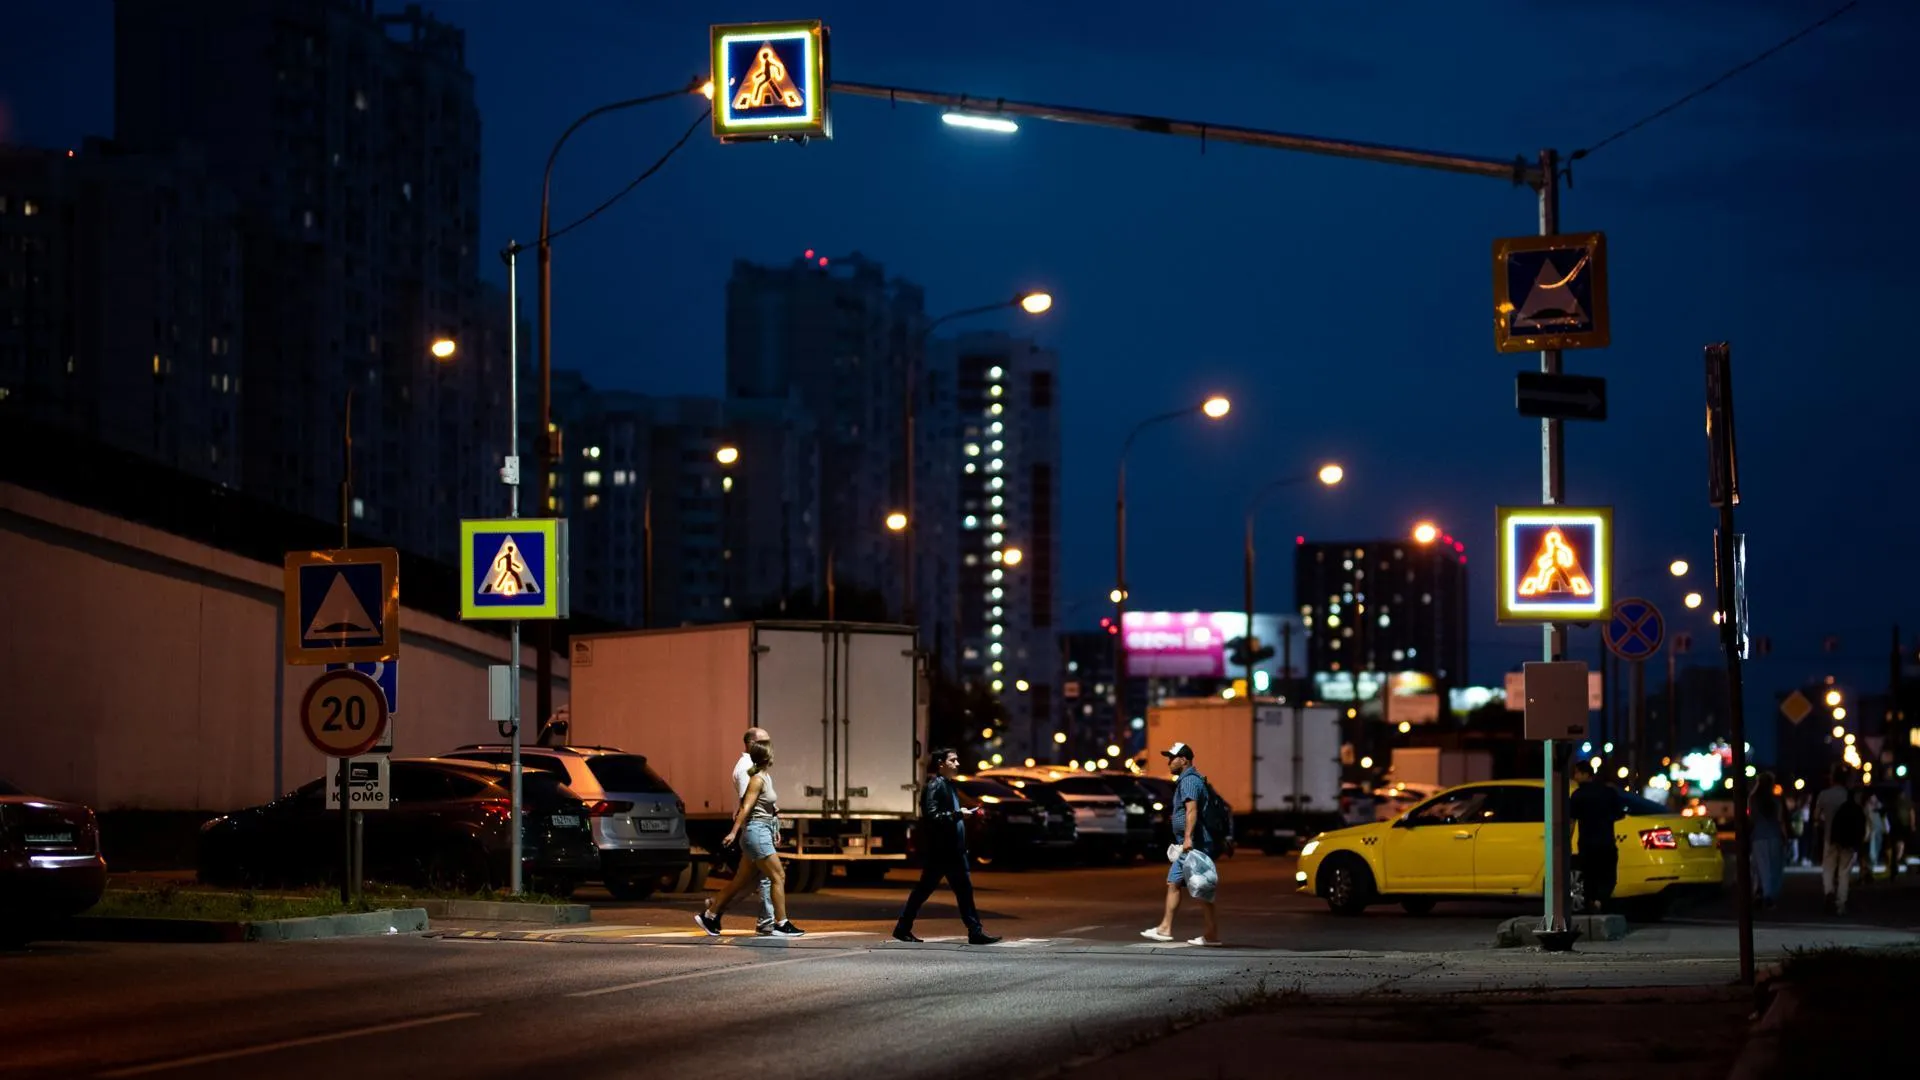 7 пешеходных переходов с «умной» подсветкой оборудовали на дорогах Люберец